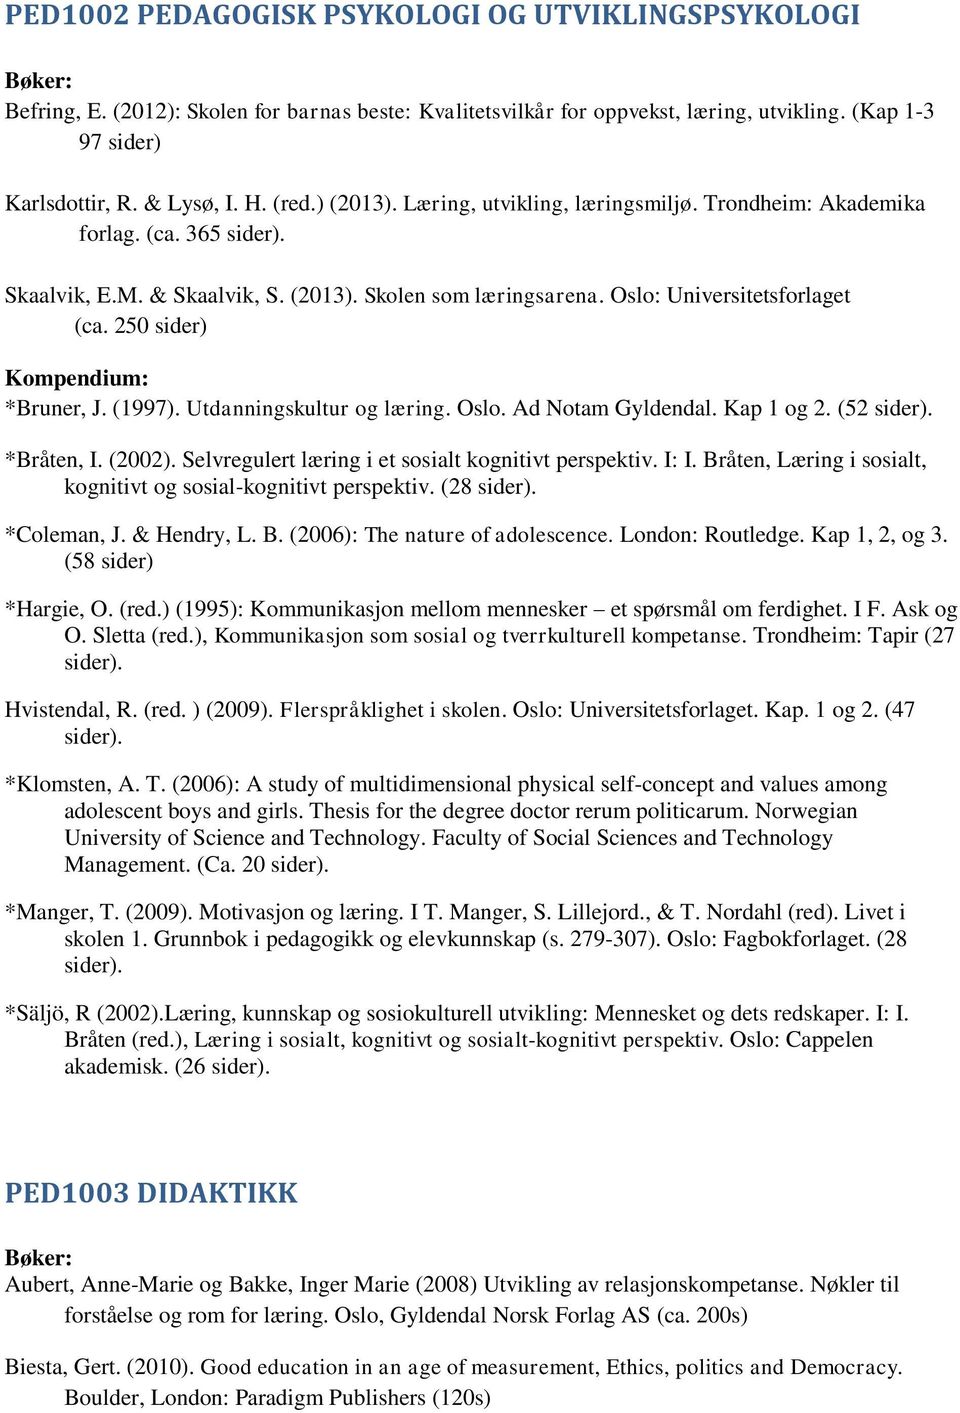 250 sider) Kompendium: *Bruner, J. (1997). Utdanningskultur og læring. Oslo. Ad Notam Gyldendal. Kap 1 og 2. (52 sider). *Bråten, I. (2002). Selvregulert læring i et sosialt kognitivt perspektiv.